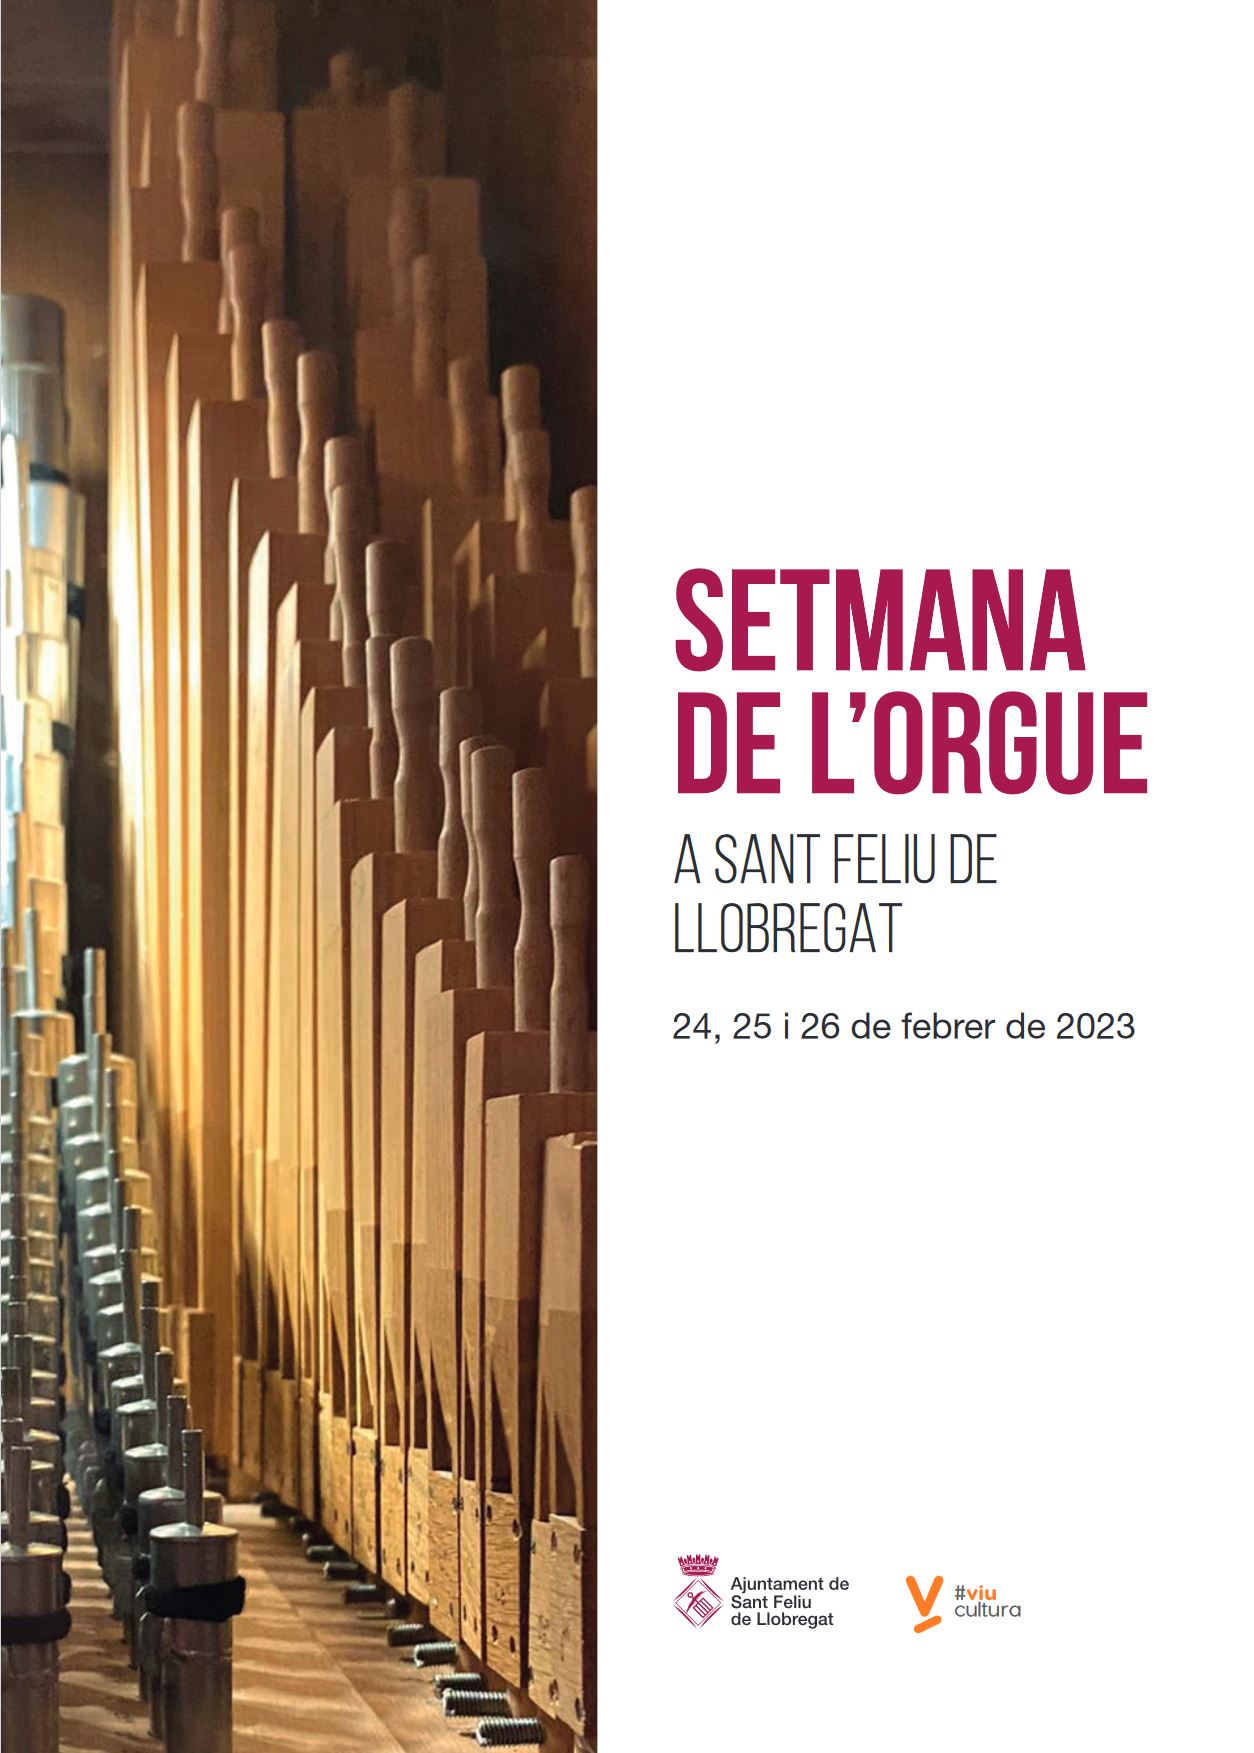 Concert en la setmana de l'orgue de Sant feliu de Llobregat